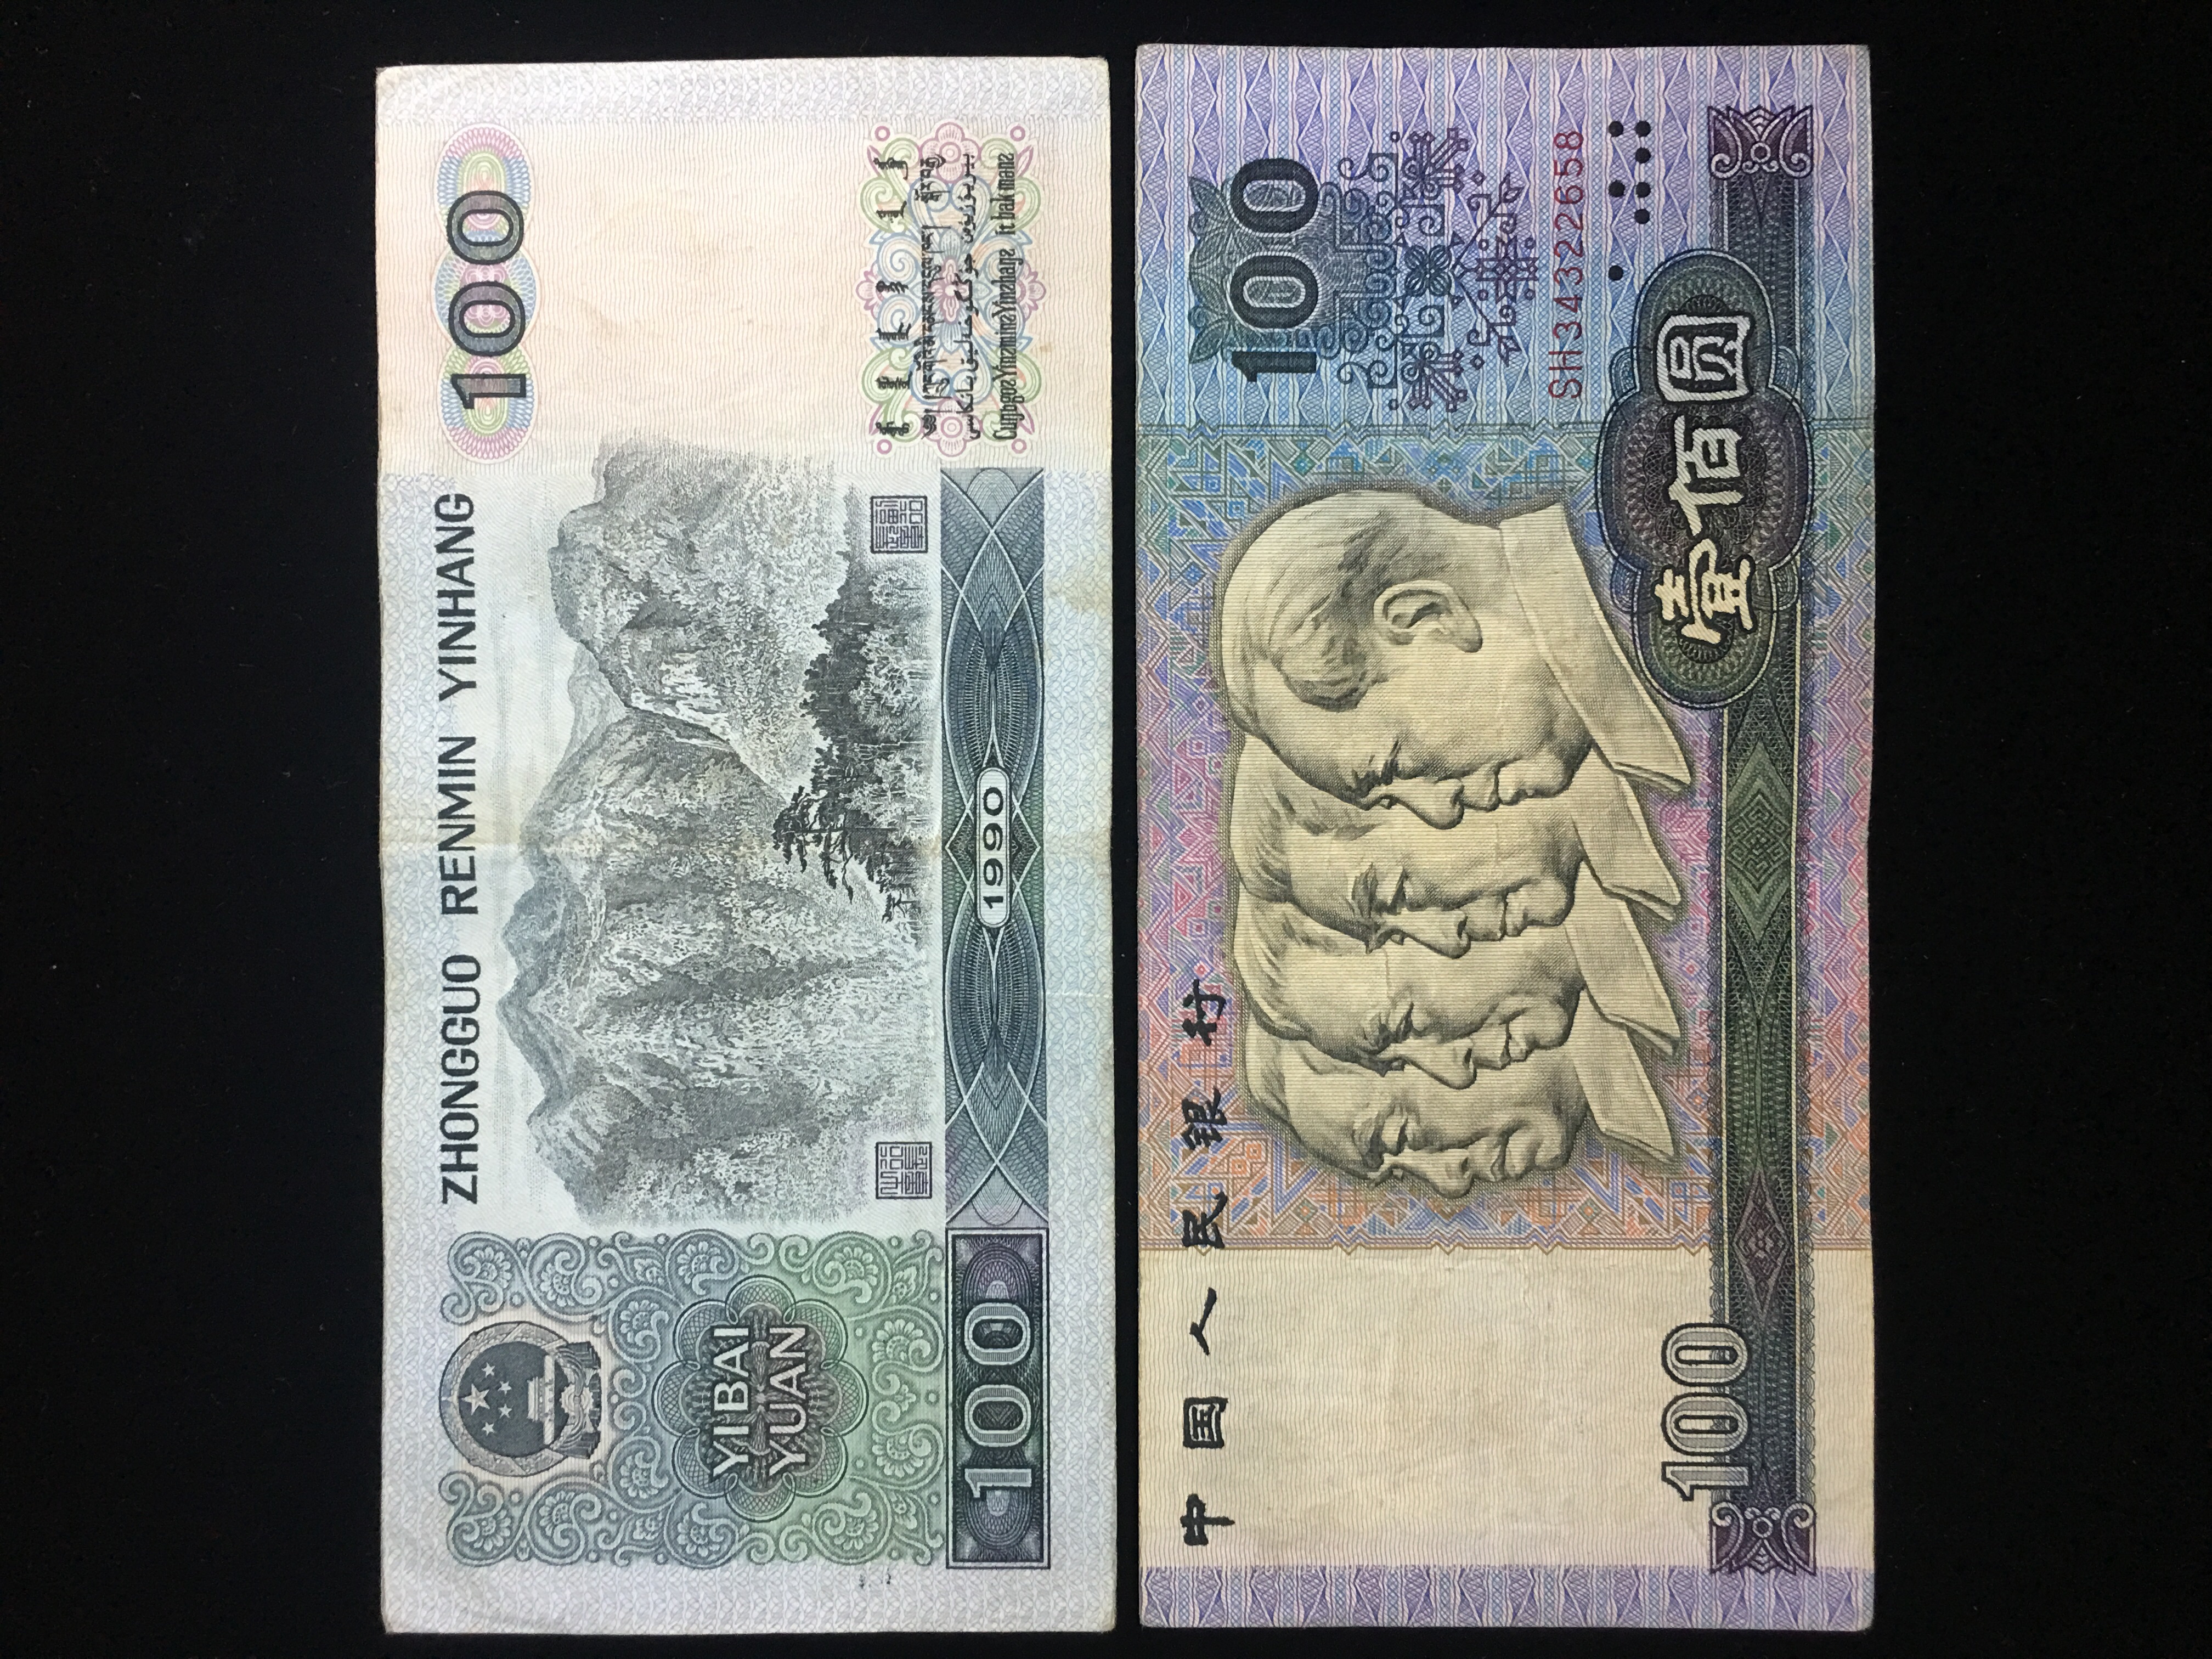 第四版100元人民币图案图片